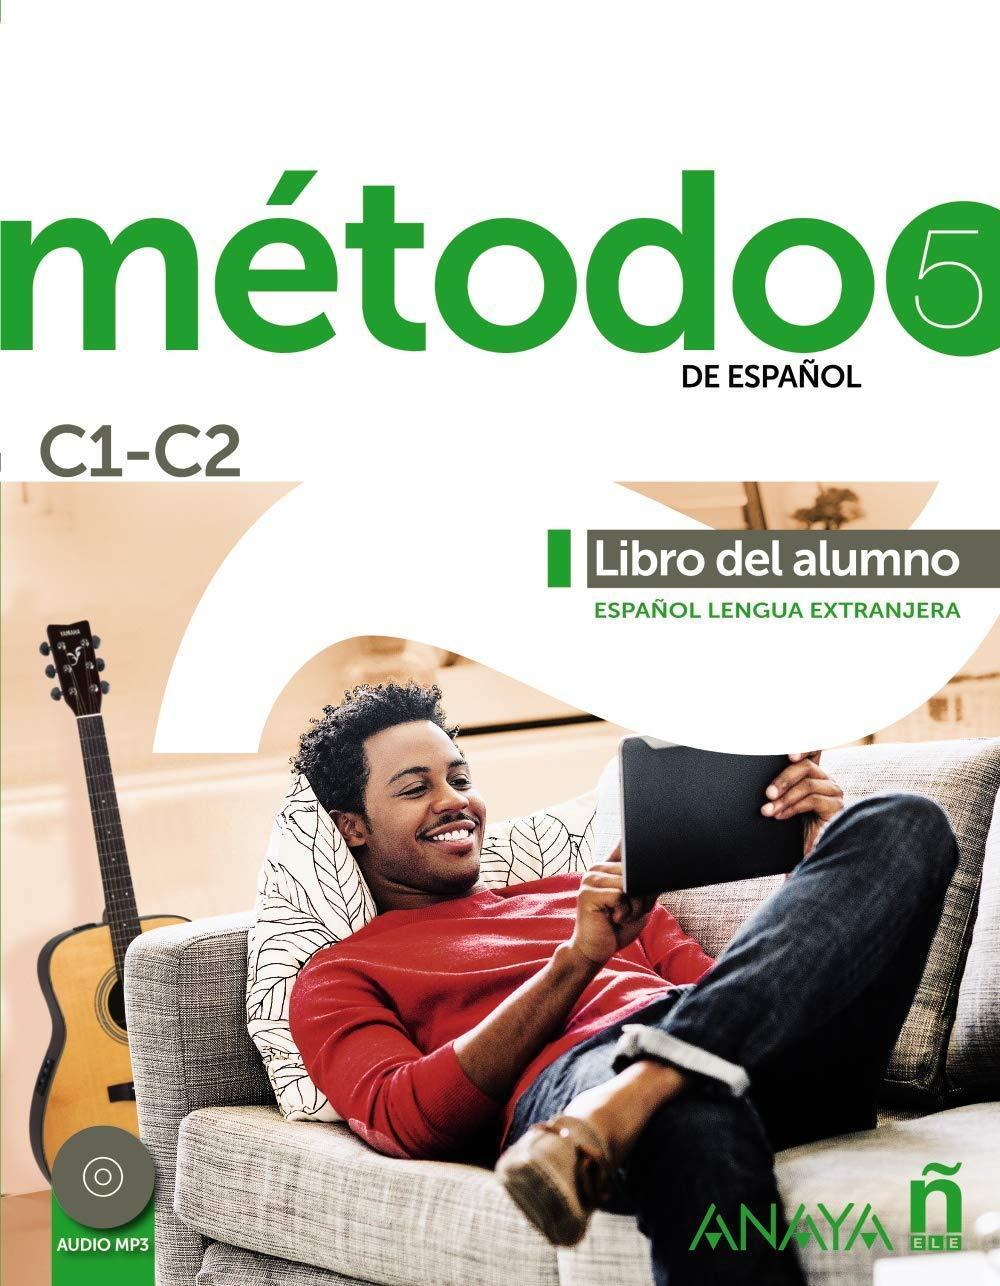 METODO 5 LIBRO DEL ALUMNO (+AUDIO DESCARGABLE) 2021